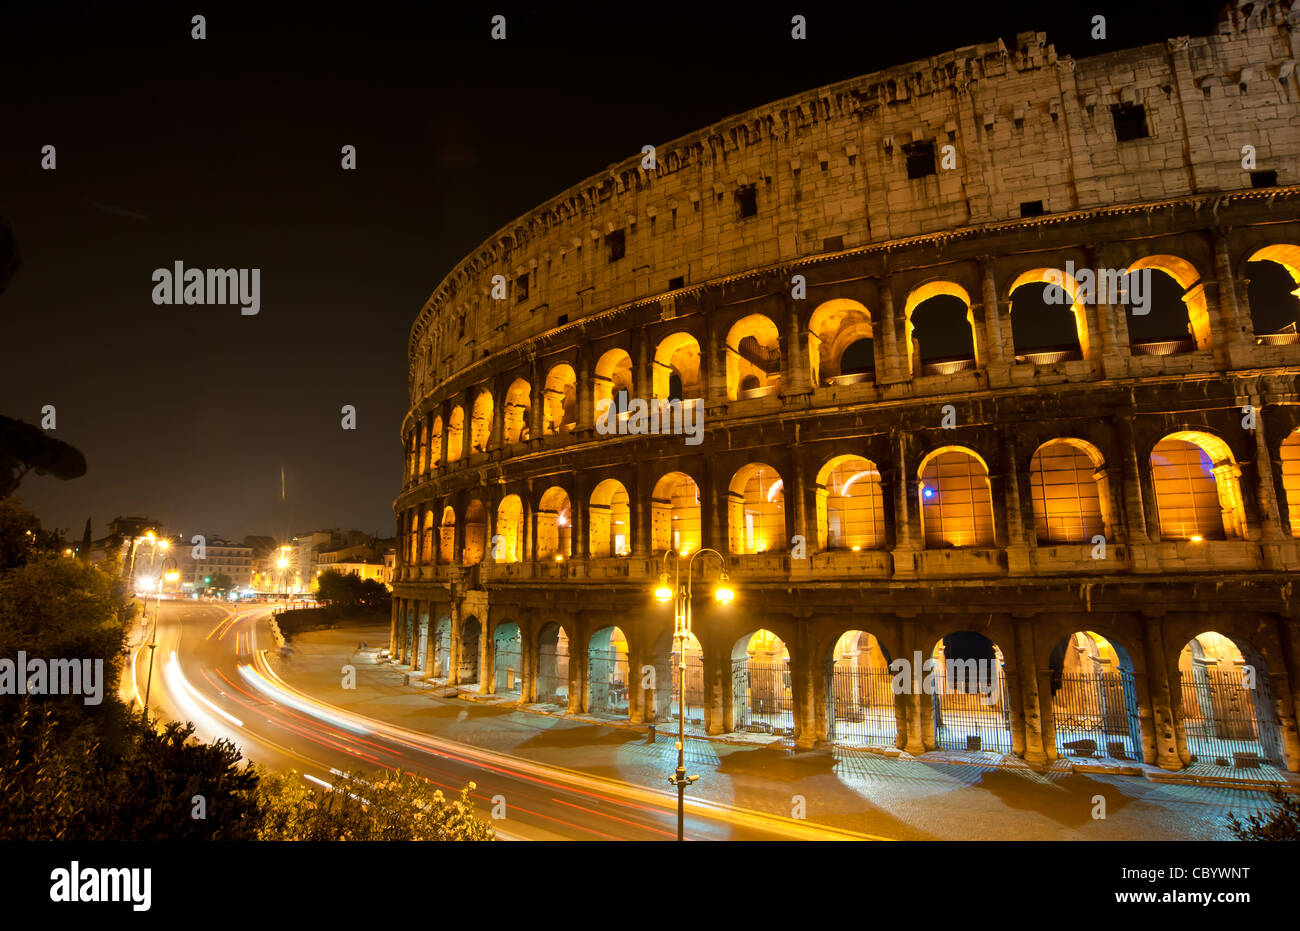 Datenverkehr um das Kolosseum in Rom, Italien nach Einbruch der Dunkelheit. Stockfoto